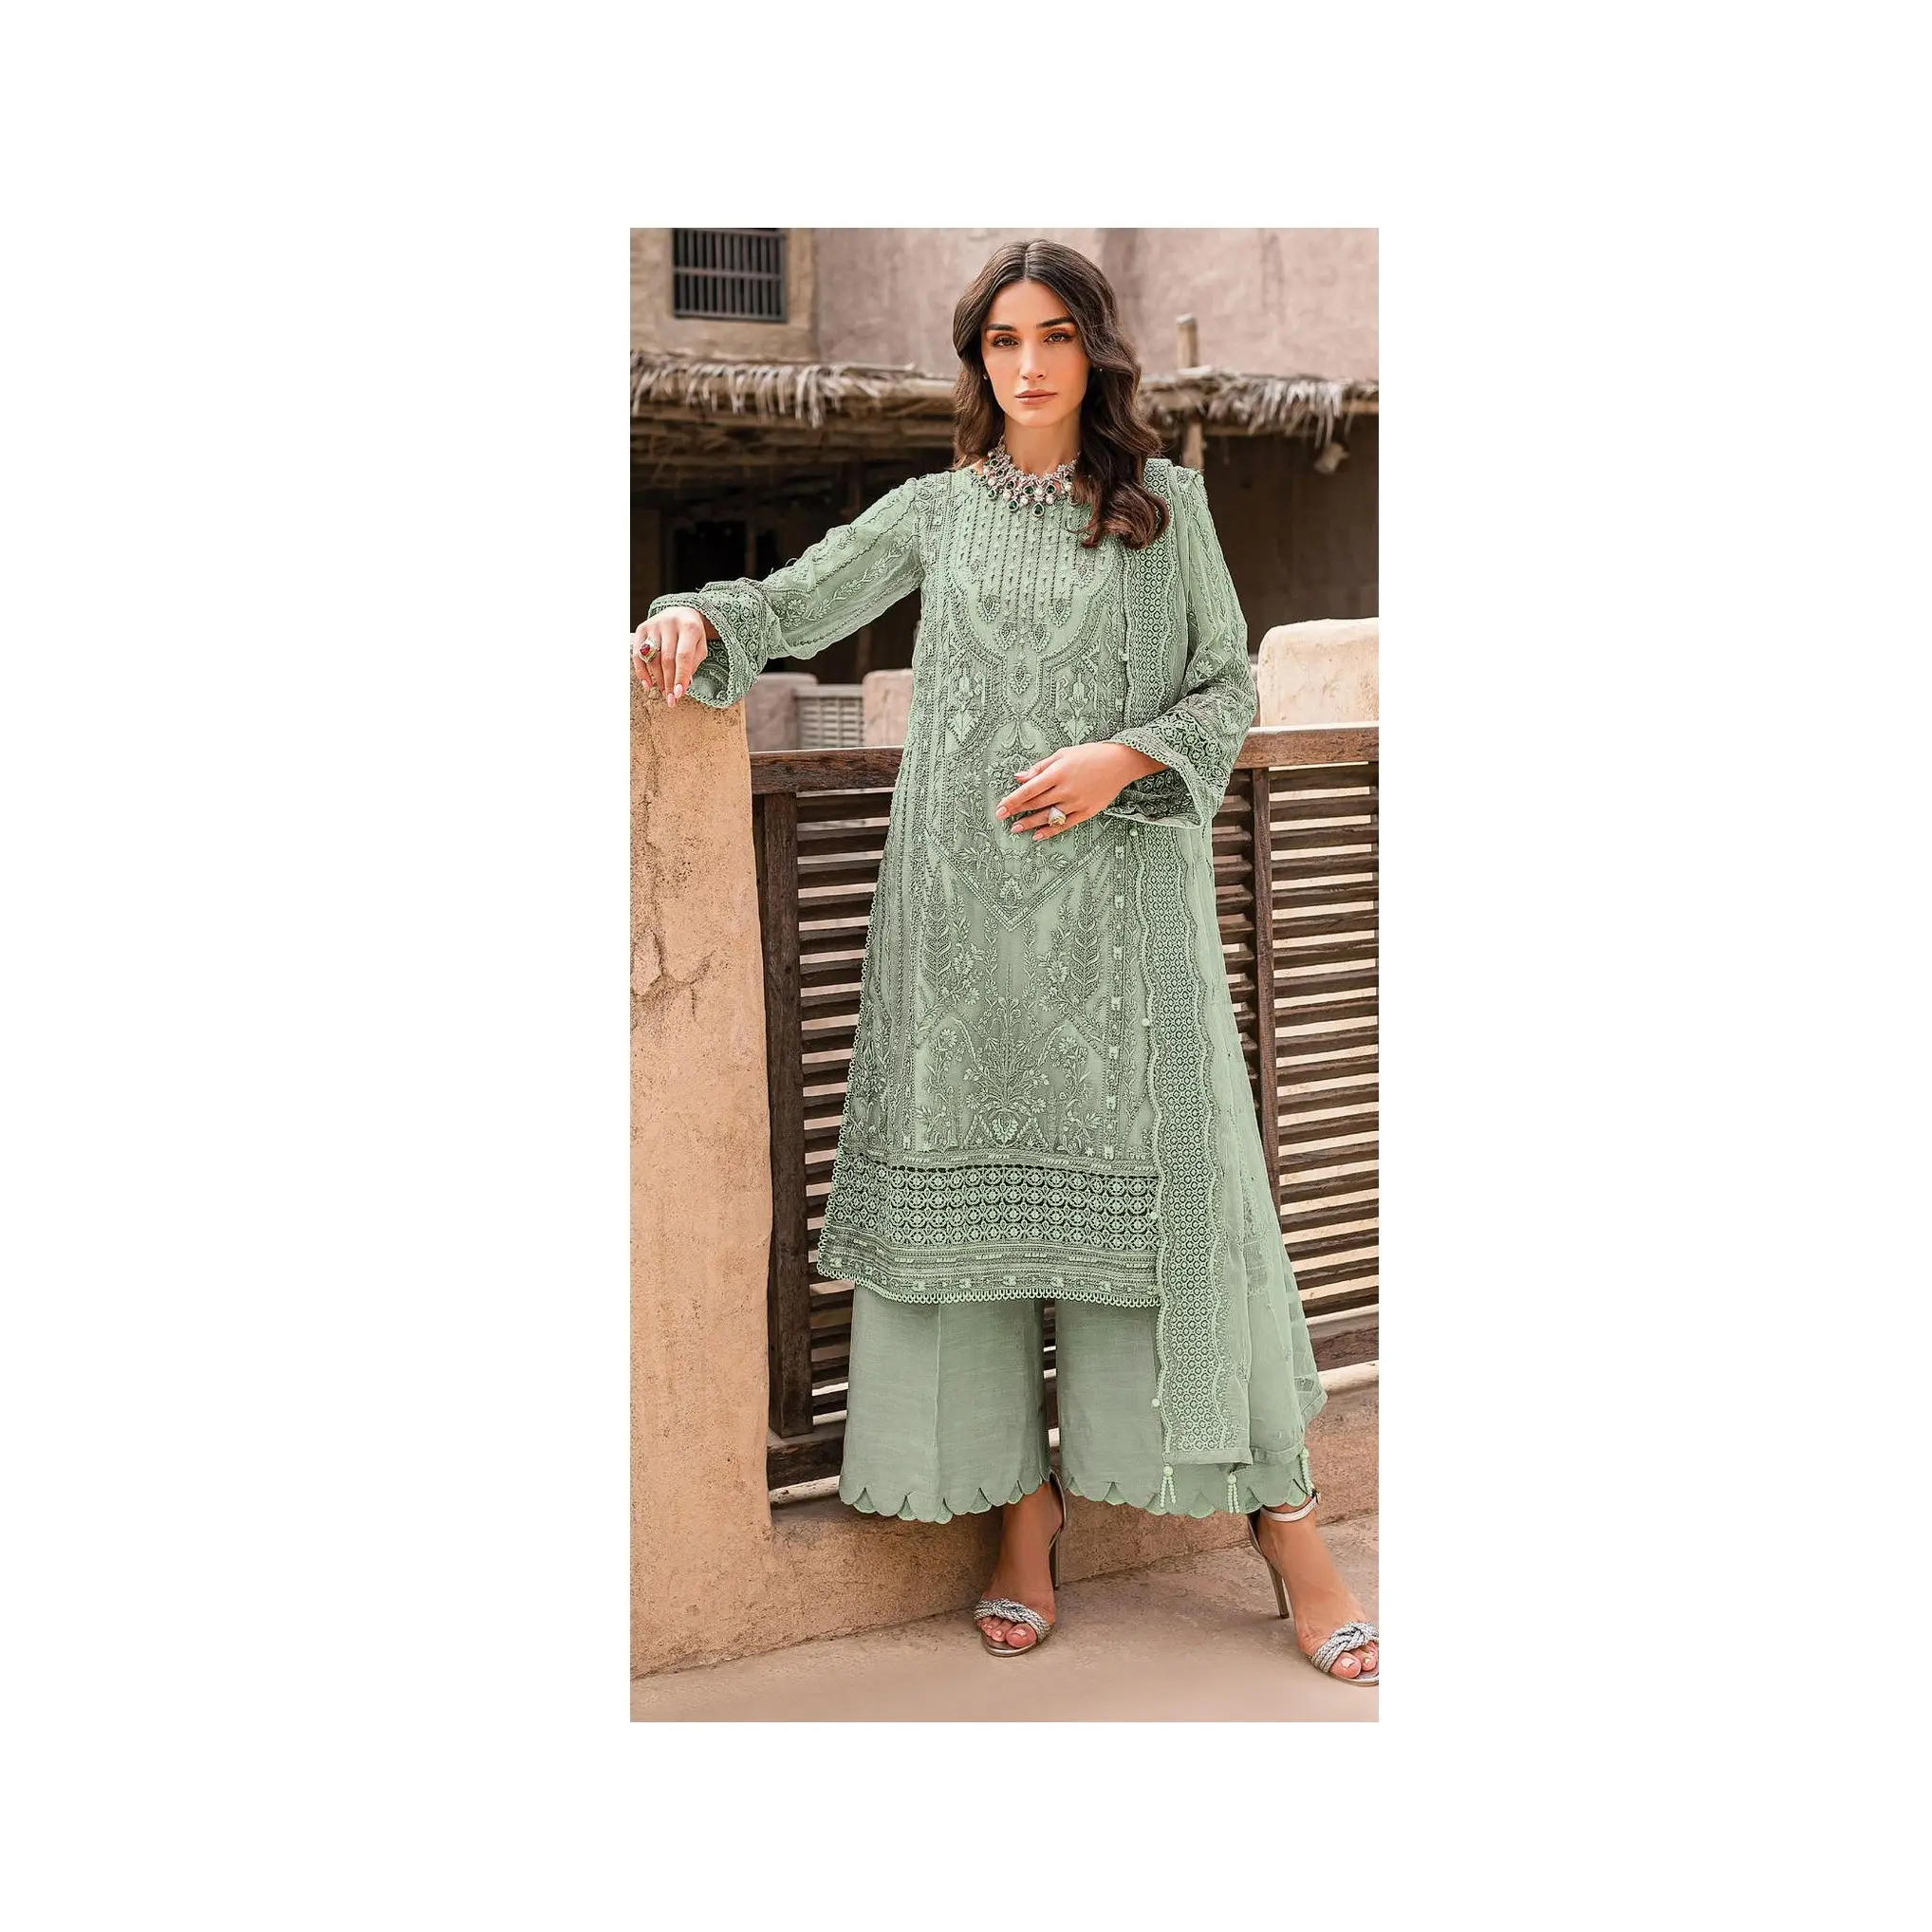 Sadece hindistan'dan toptan fiyata mevcut trend serisi hint ve pakistan giyim kadın takım elbise